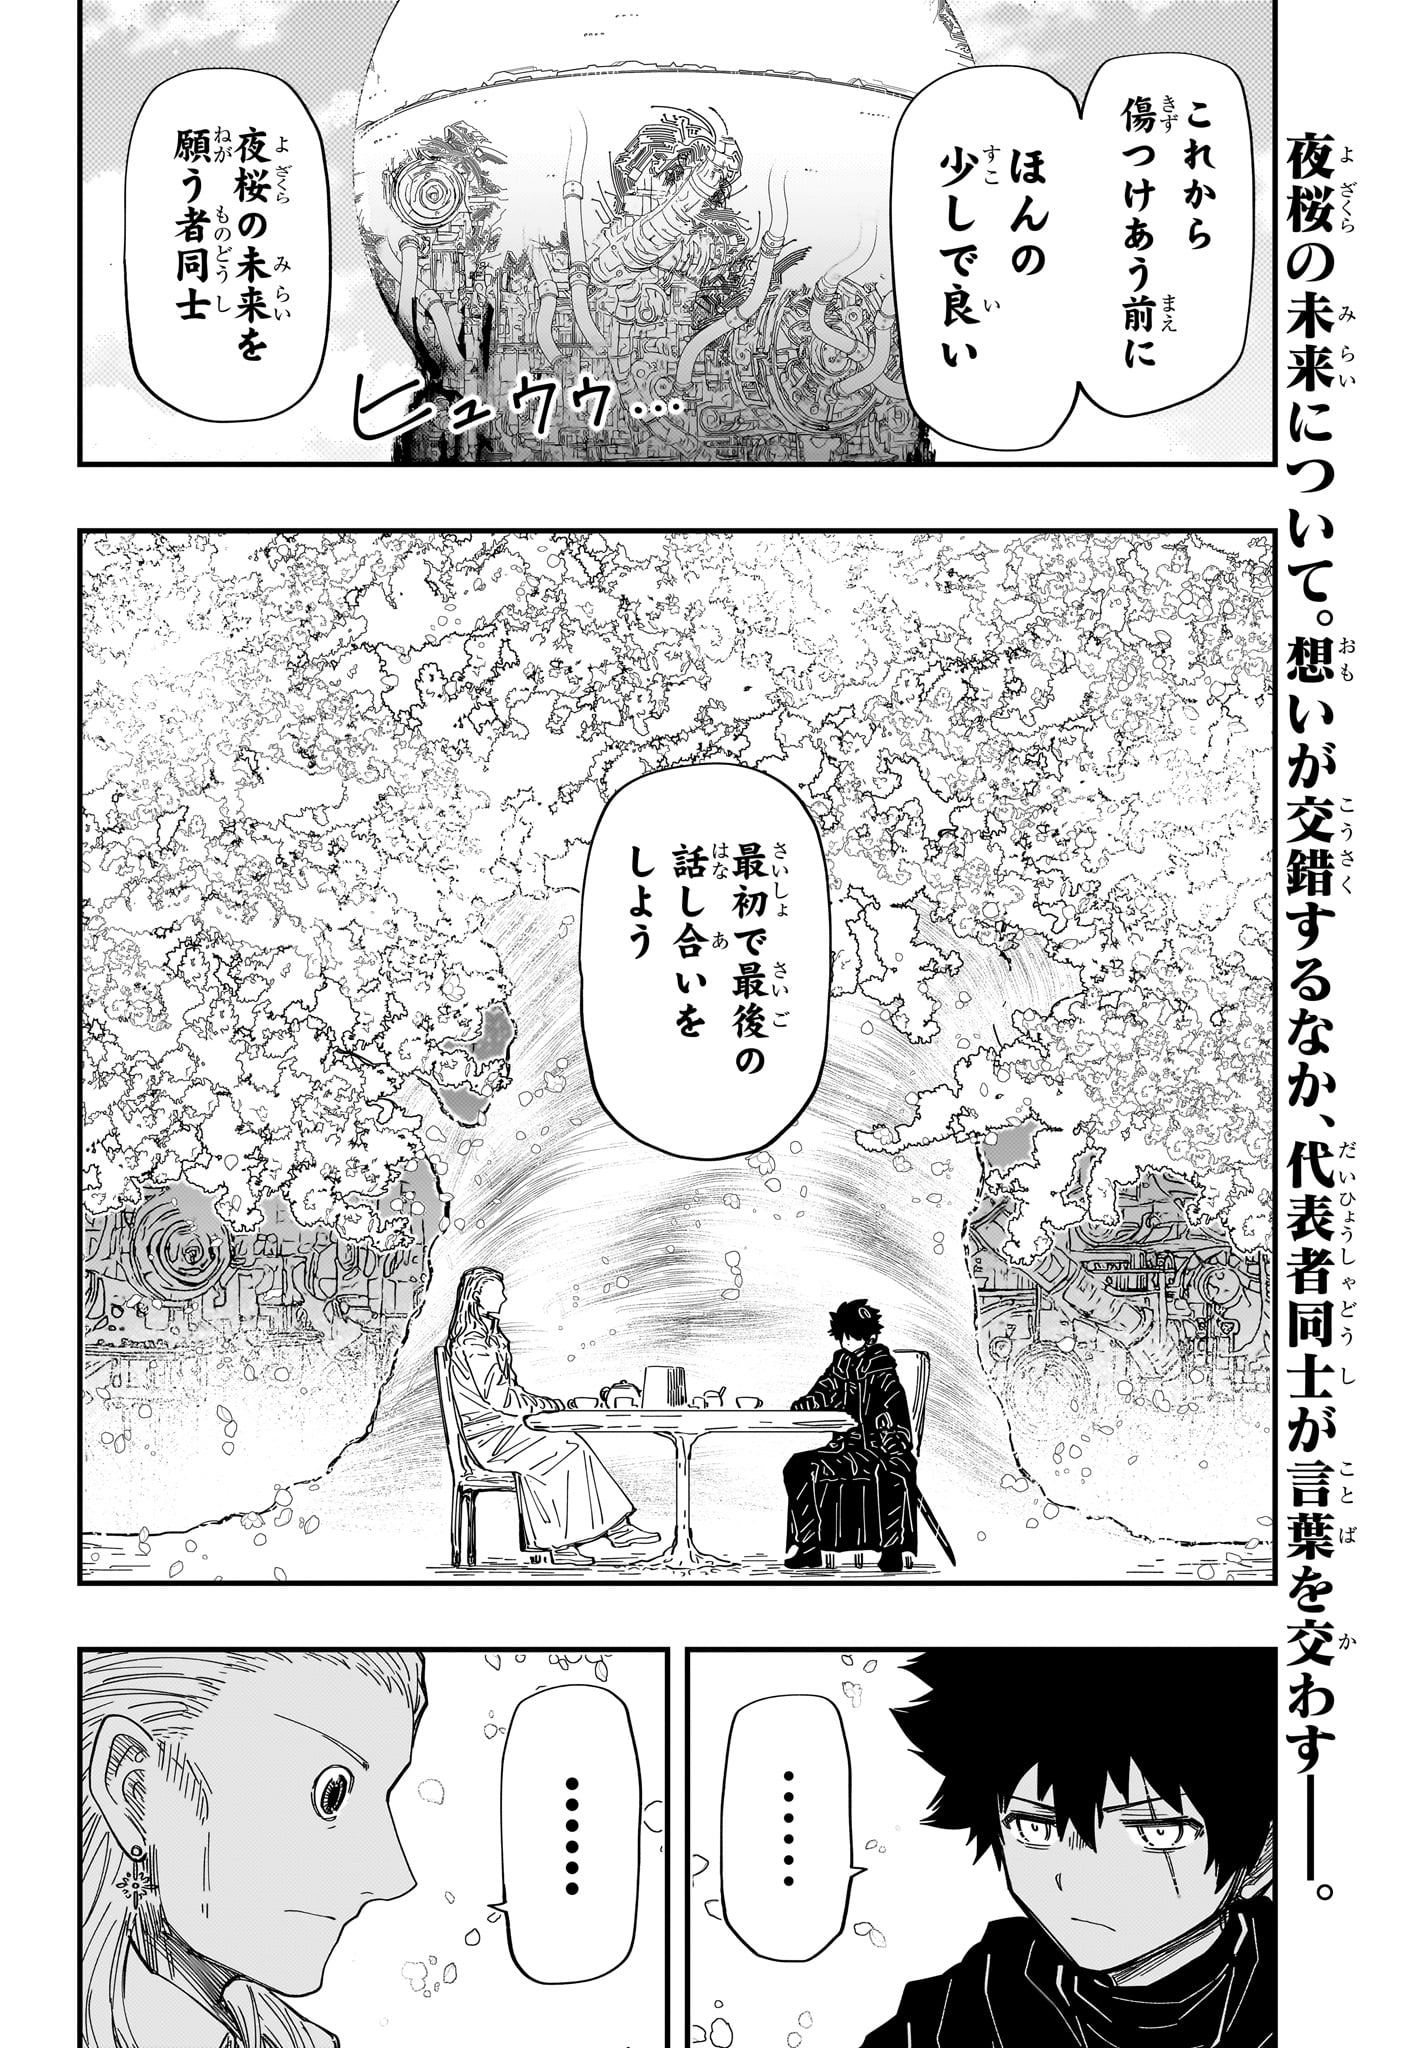 Yozakura-san Chi no Daisakusen - Chapter 230 - Page 2